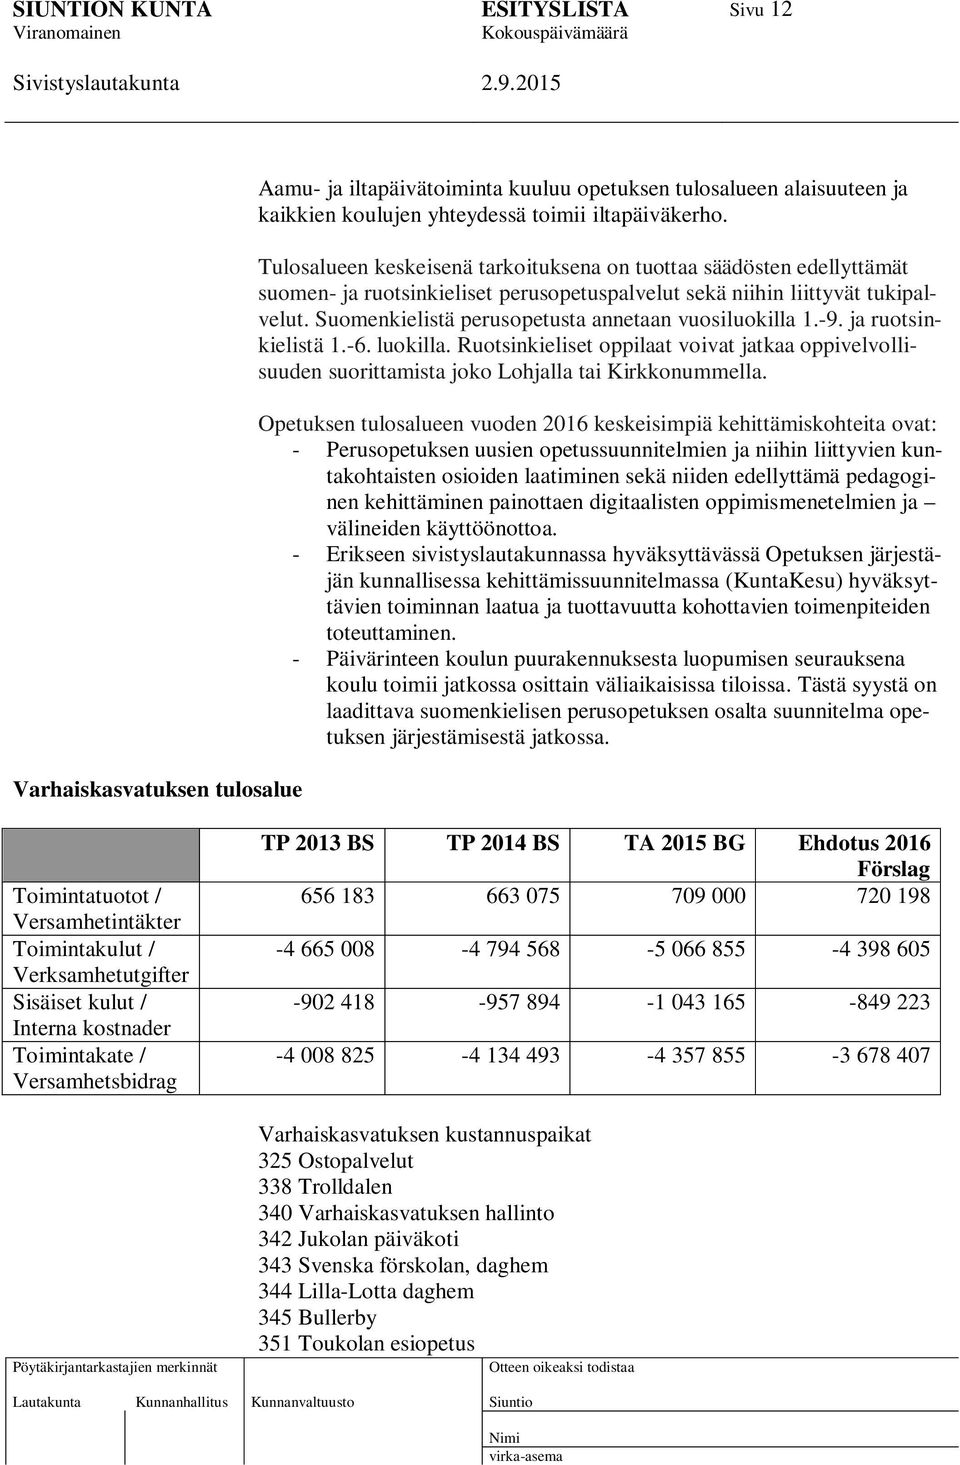 Suomenkielistä perusopetusta annetaan vuosiluokilla 1.-9. ja ruotsinkielistä 1.-6. luokilla. Ruotsinkieliset oppilaat voivat jatkaa oppivelvollisuuden suorittamista joko Lohjalla tai Kirkkonummella.